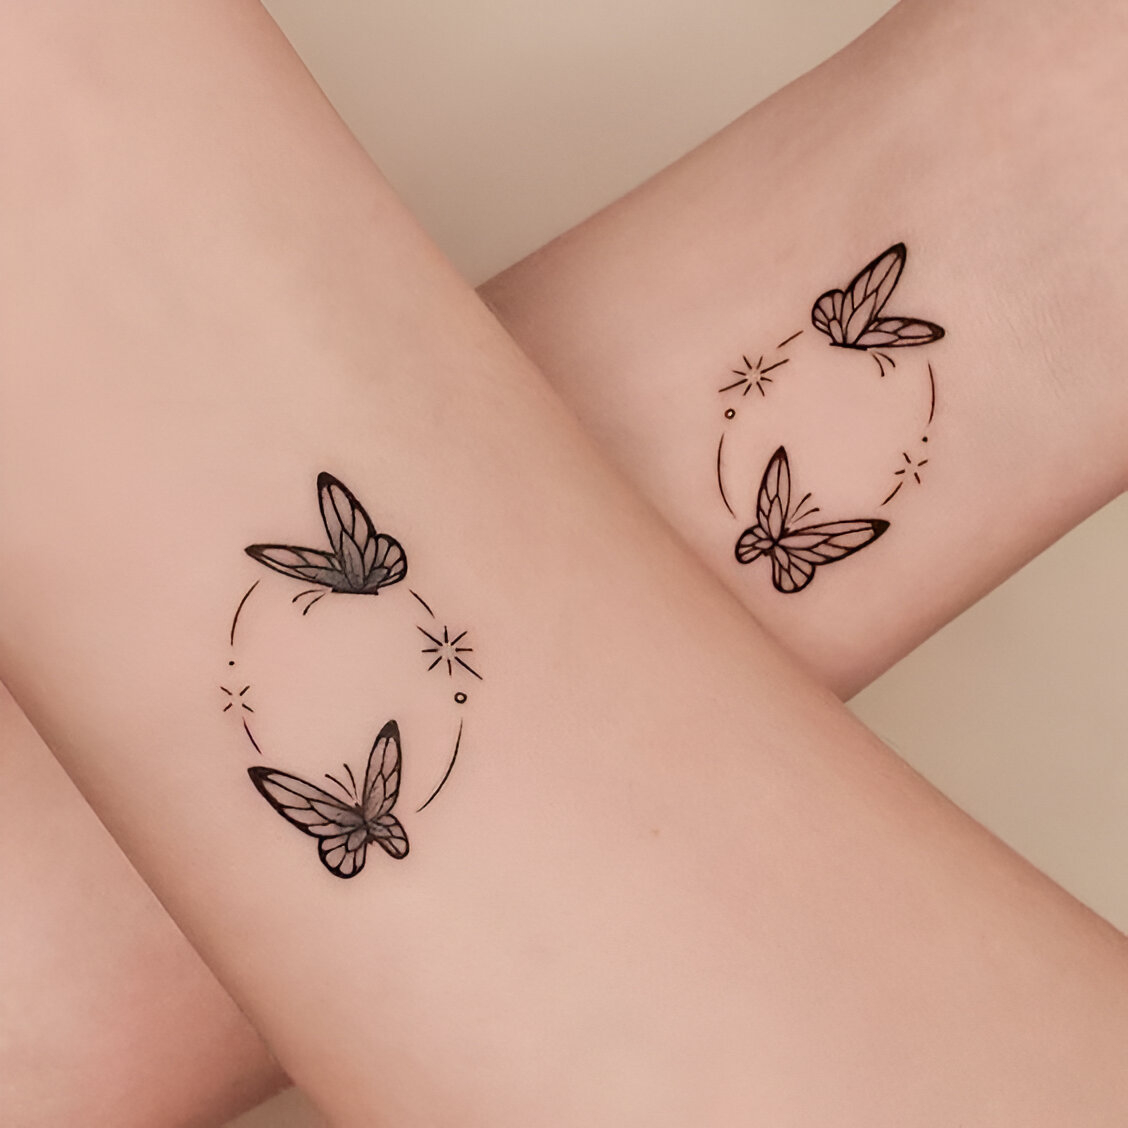 Matching Butterfly Wrist Tattoo